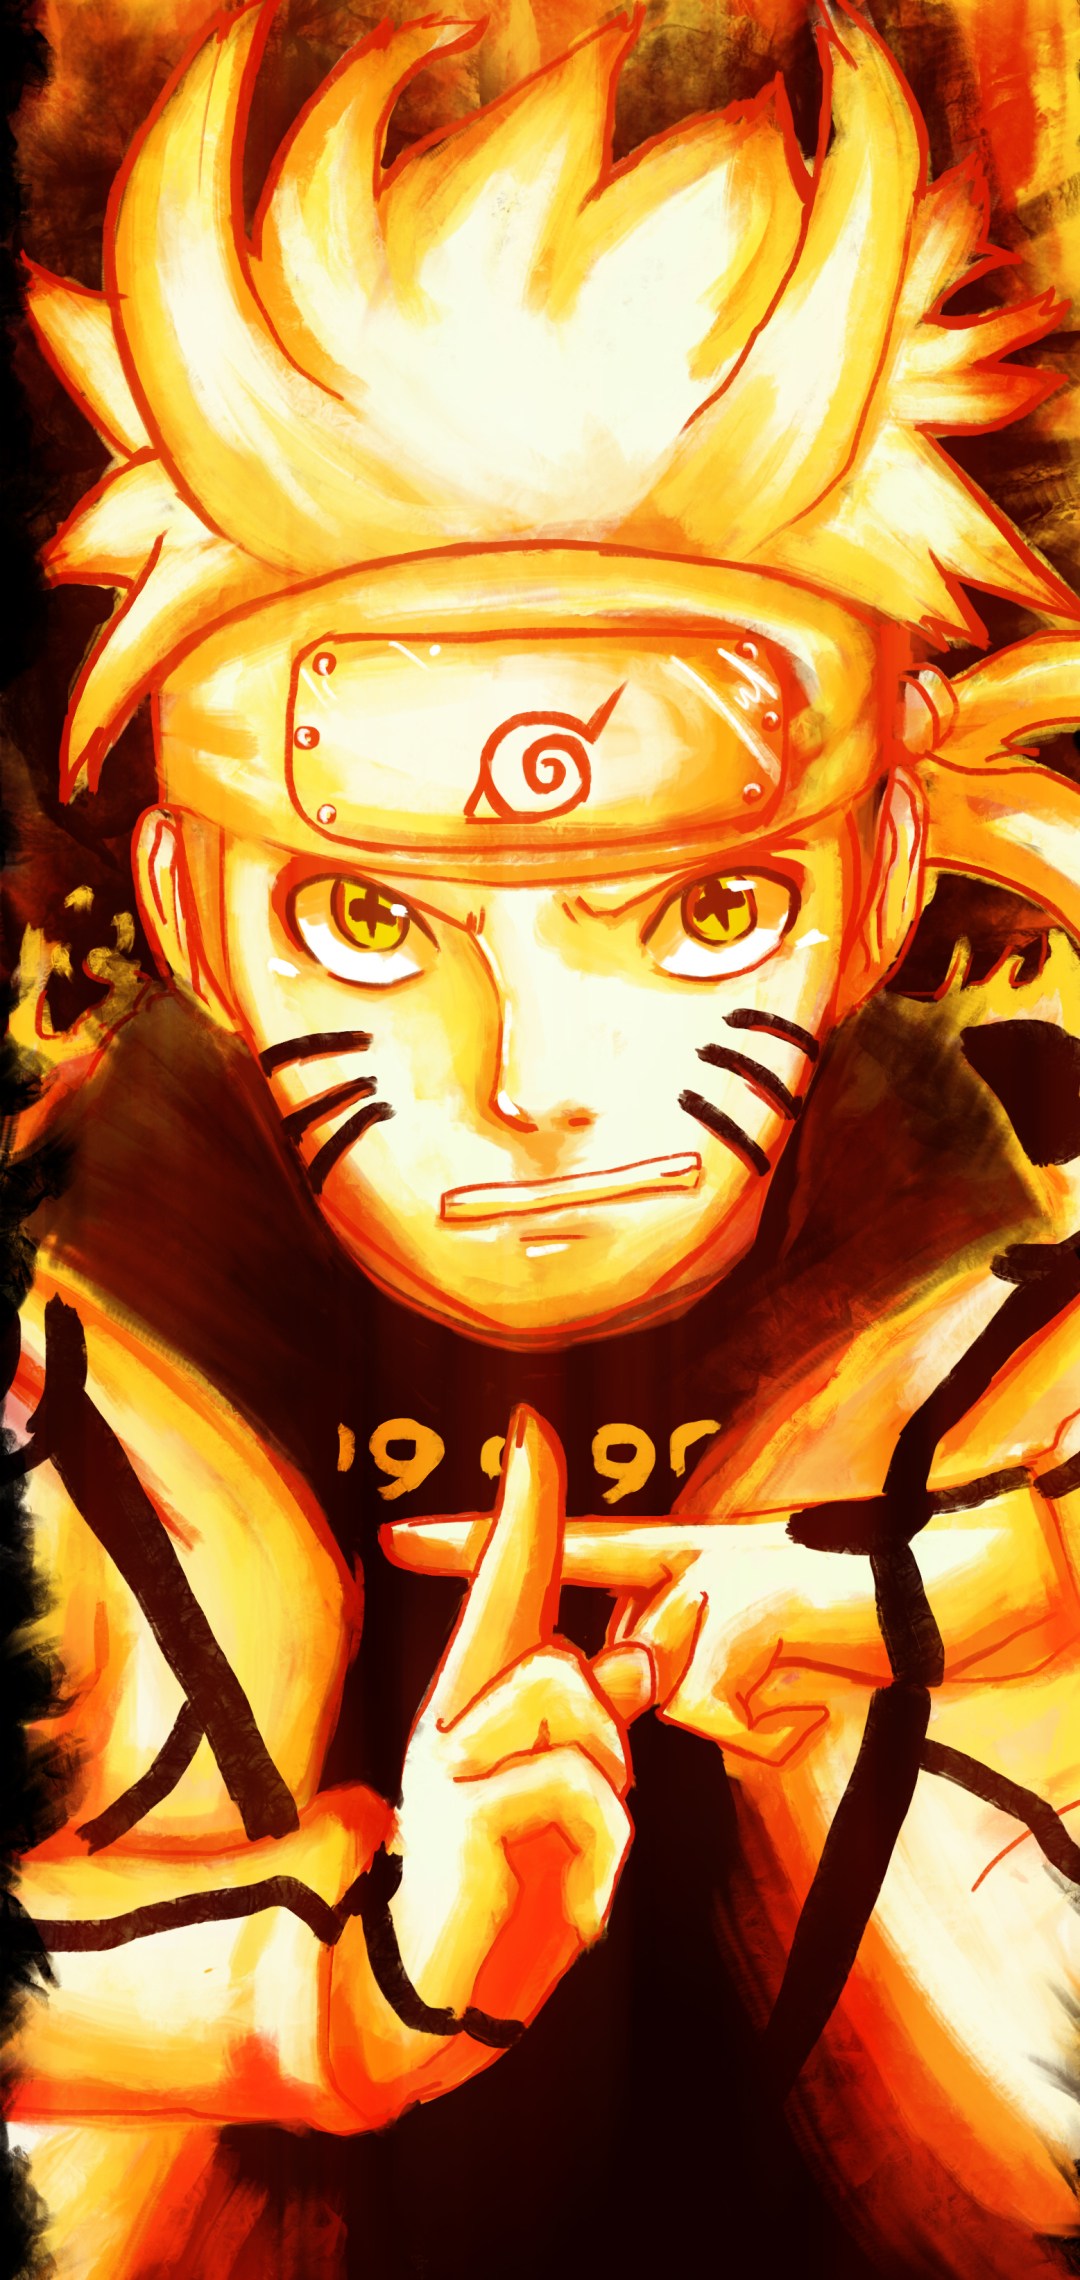 Hình nền Naruto Lục Đạo là một tuyệt tác nghệ thuật độc đáo, làm nhấn mạnh sự lợi hại và tinh thần đồng đội của các nhân vật chính trong bộ truyện. Hãy cùng chiêm ngưỡng hình ảnh này và cảm nhận sự phi thường của các chiến binh trong làng Lá.